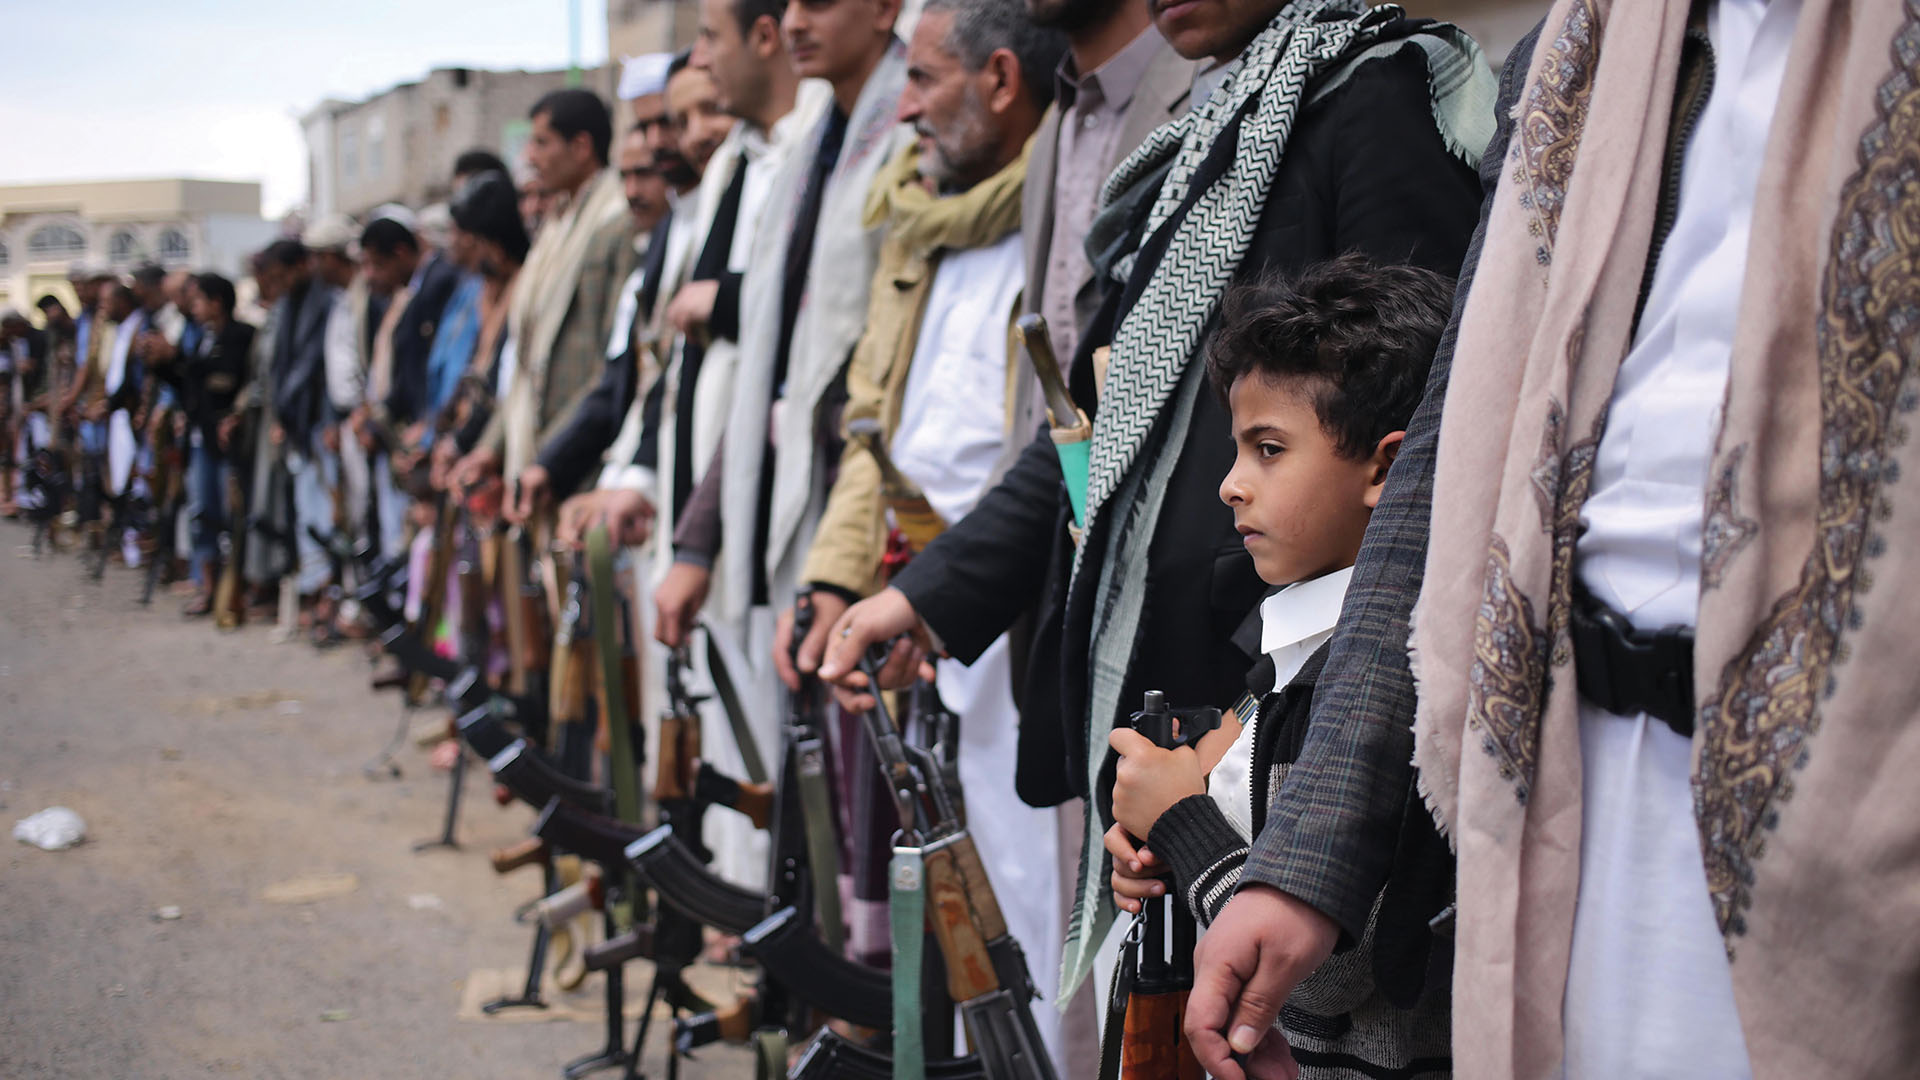 تساءلت لماذا أطلقت وسائل الإعلام على اليمن اسم “الحرب غير المرئية”.  ثم رأيت ذلك بنفسي